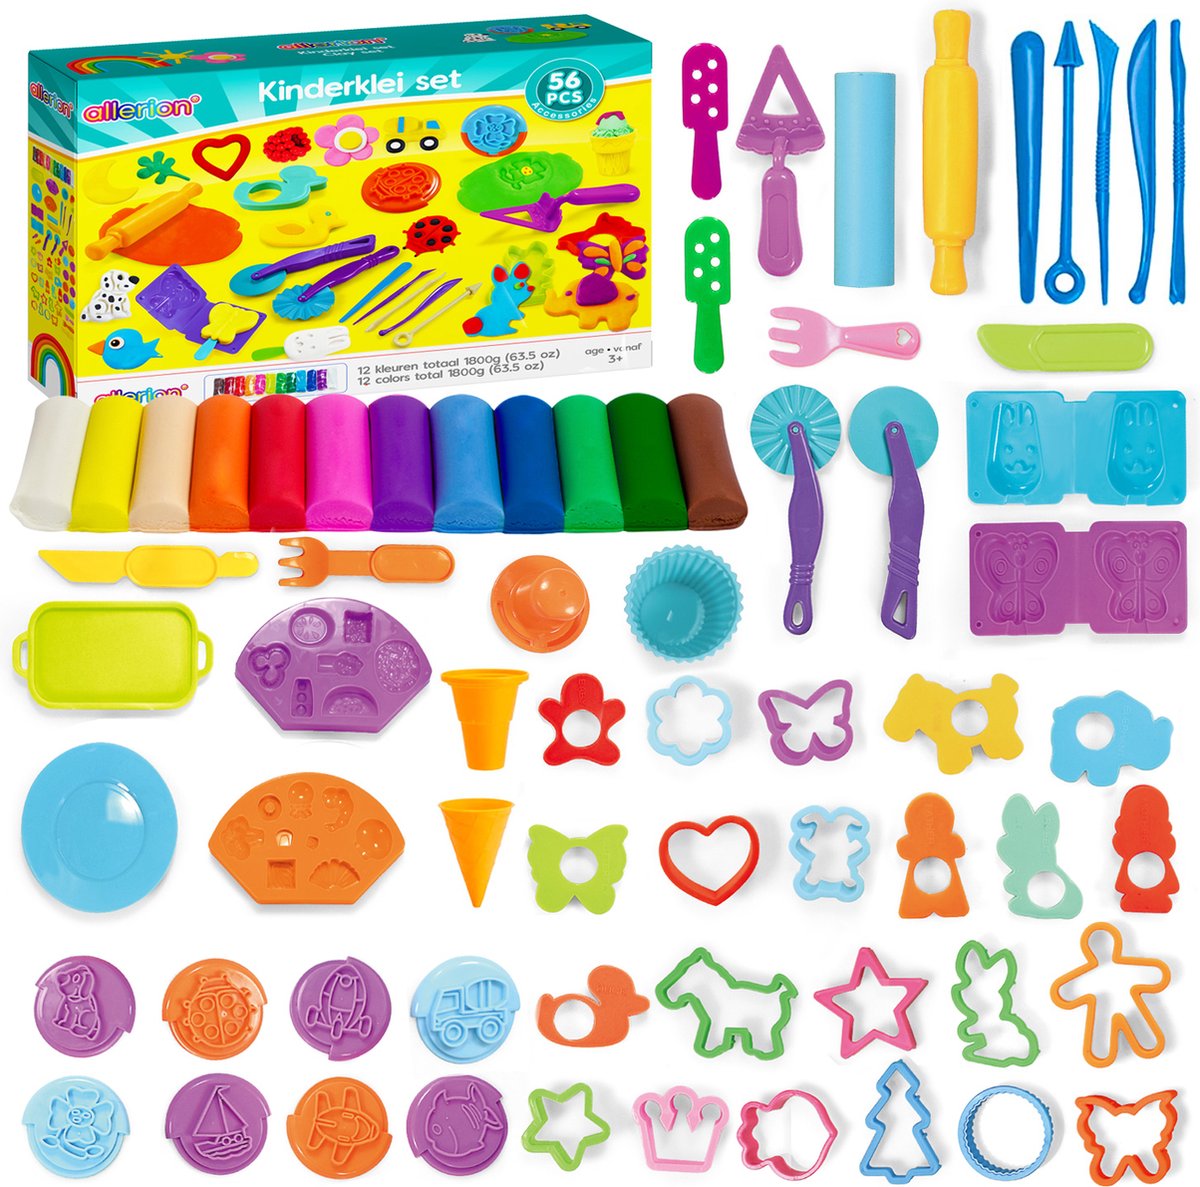 Allerion Klei Set XL - 12 Kleuren Klei - Met 54 Vormpjes, Tools en meer Accessoires - STEM Speelgoed - Inclusief Opbergdoos